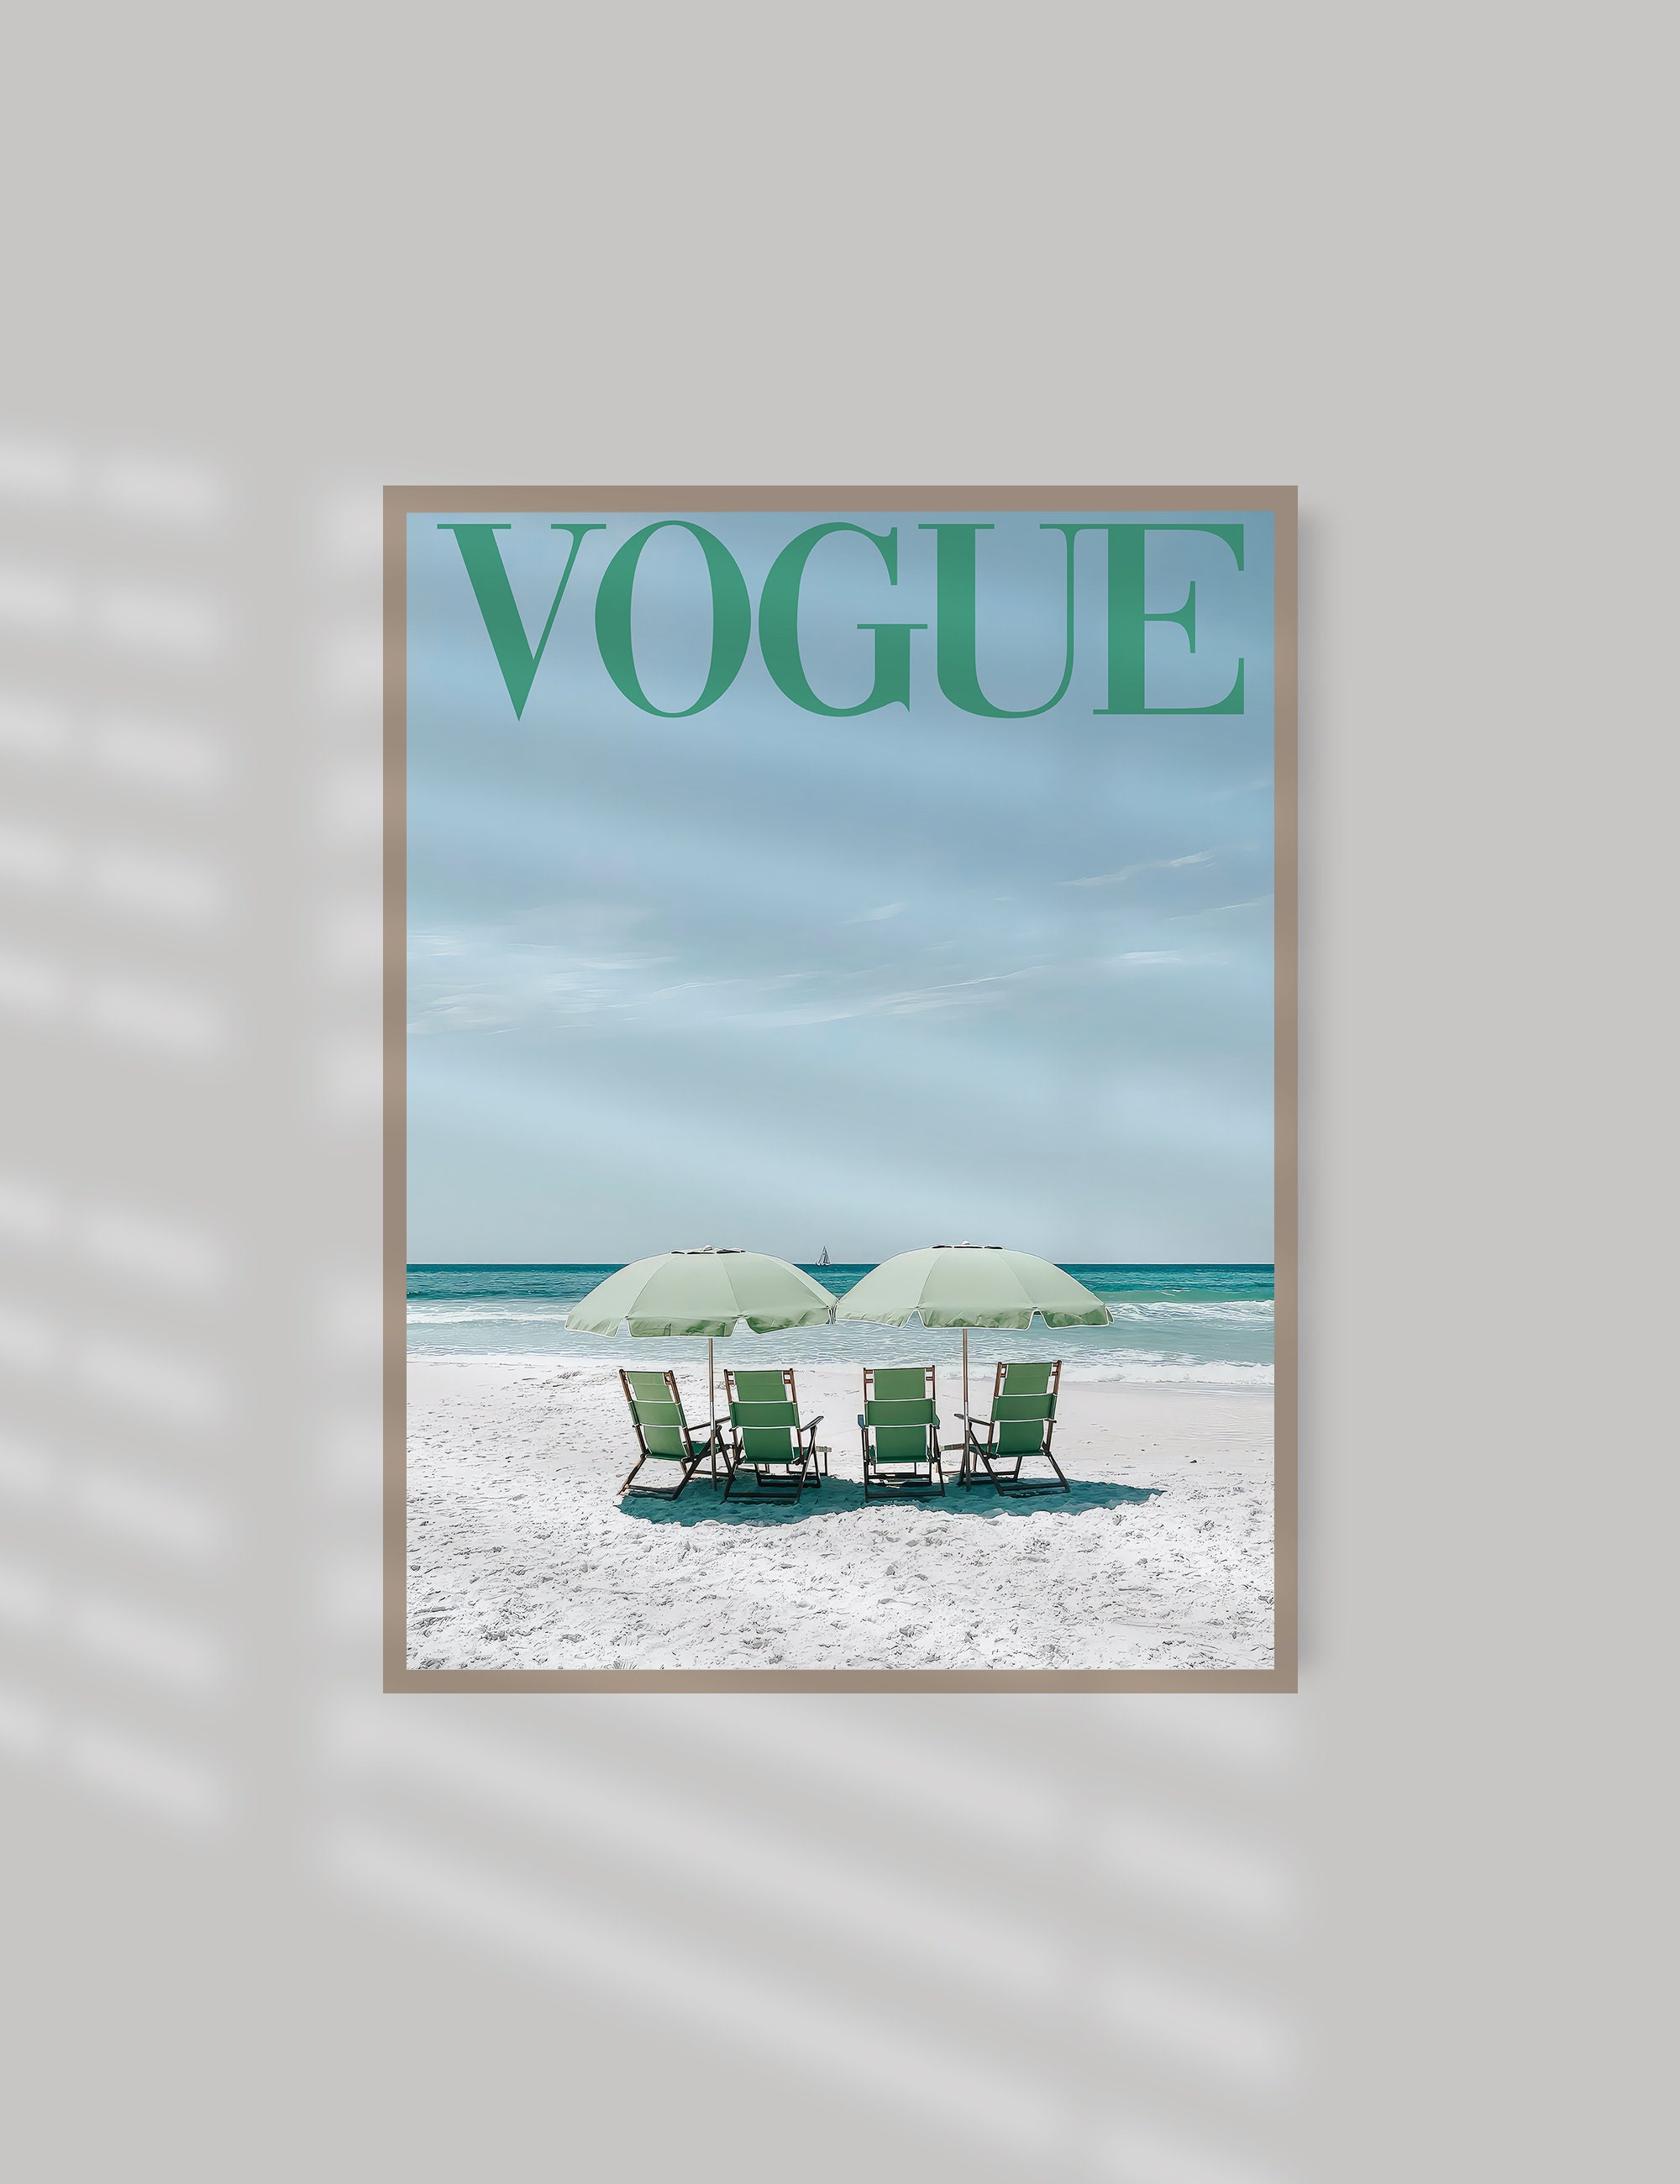 Fashion Art Prints Poster Vogue Wall Art Decor A4 Teal Salon